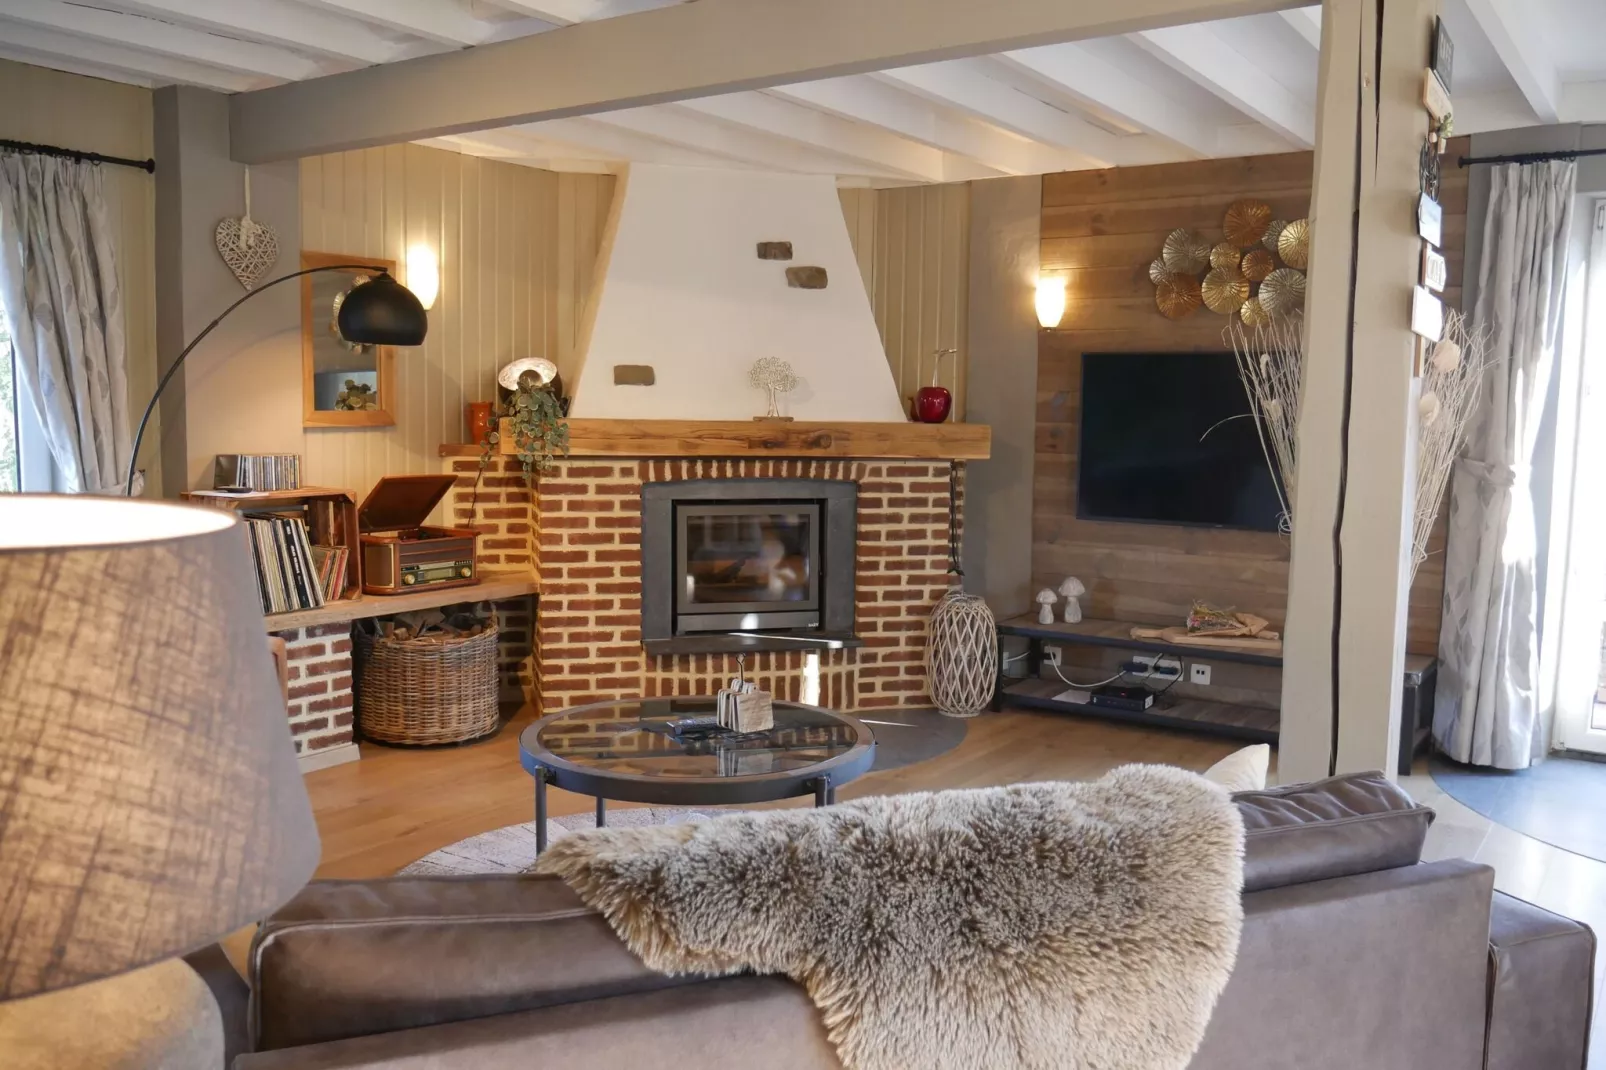 Magnifique maison de vacances avec sauna et Bains à remous située à Fillot-Woonkamer